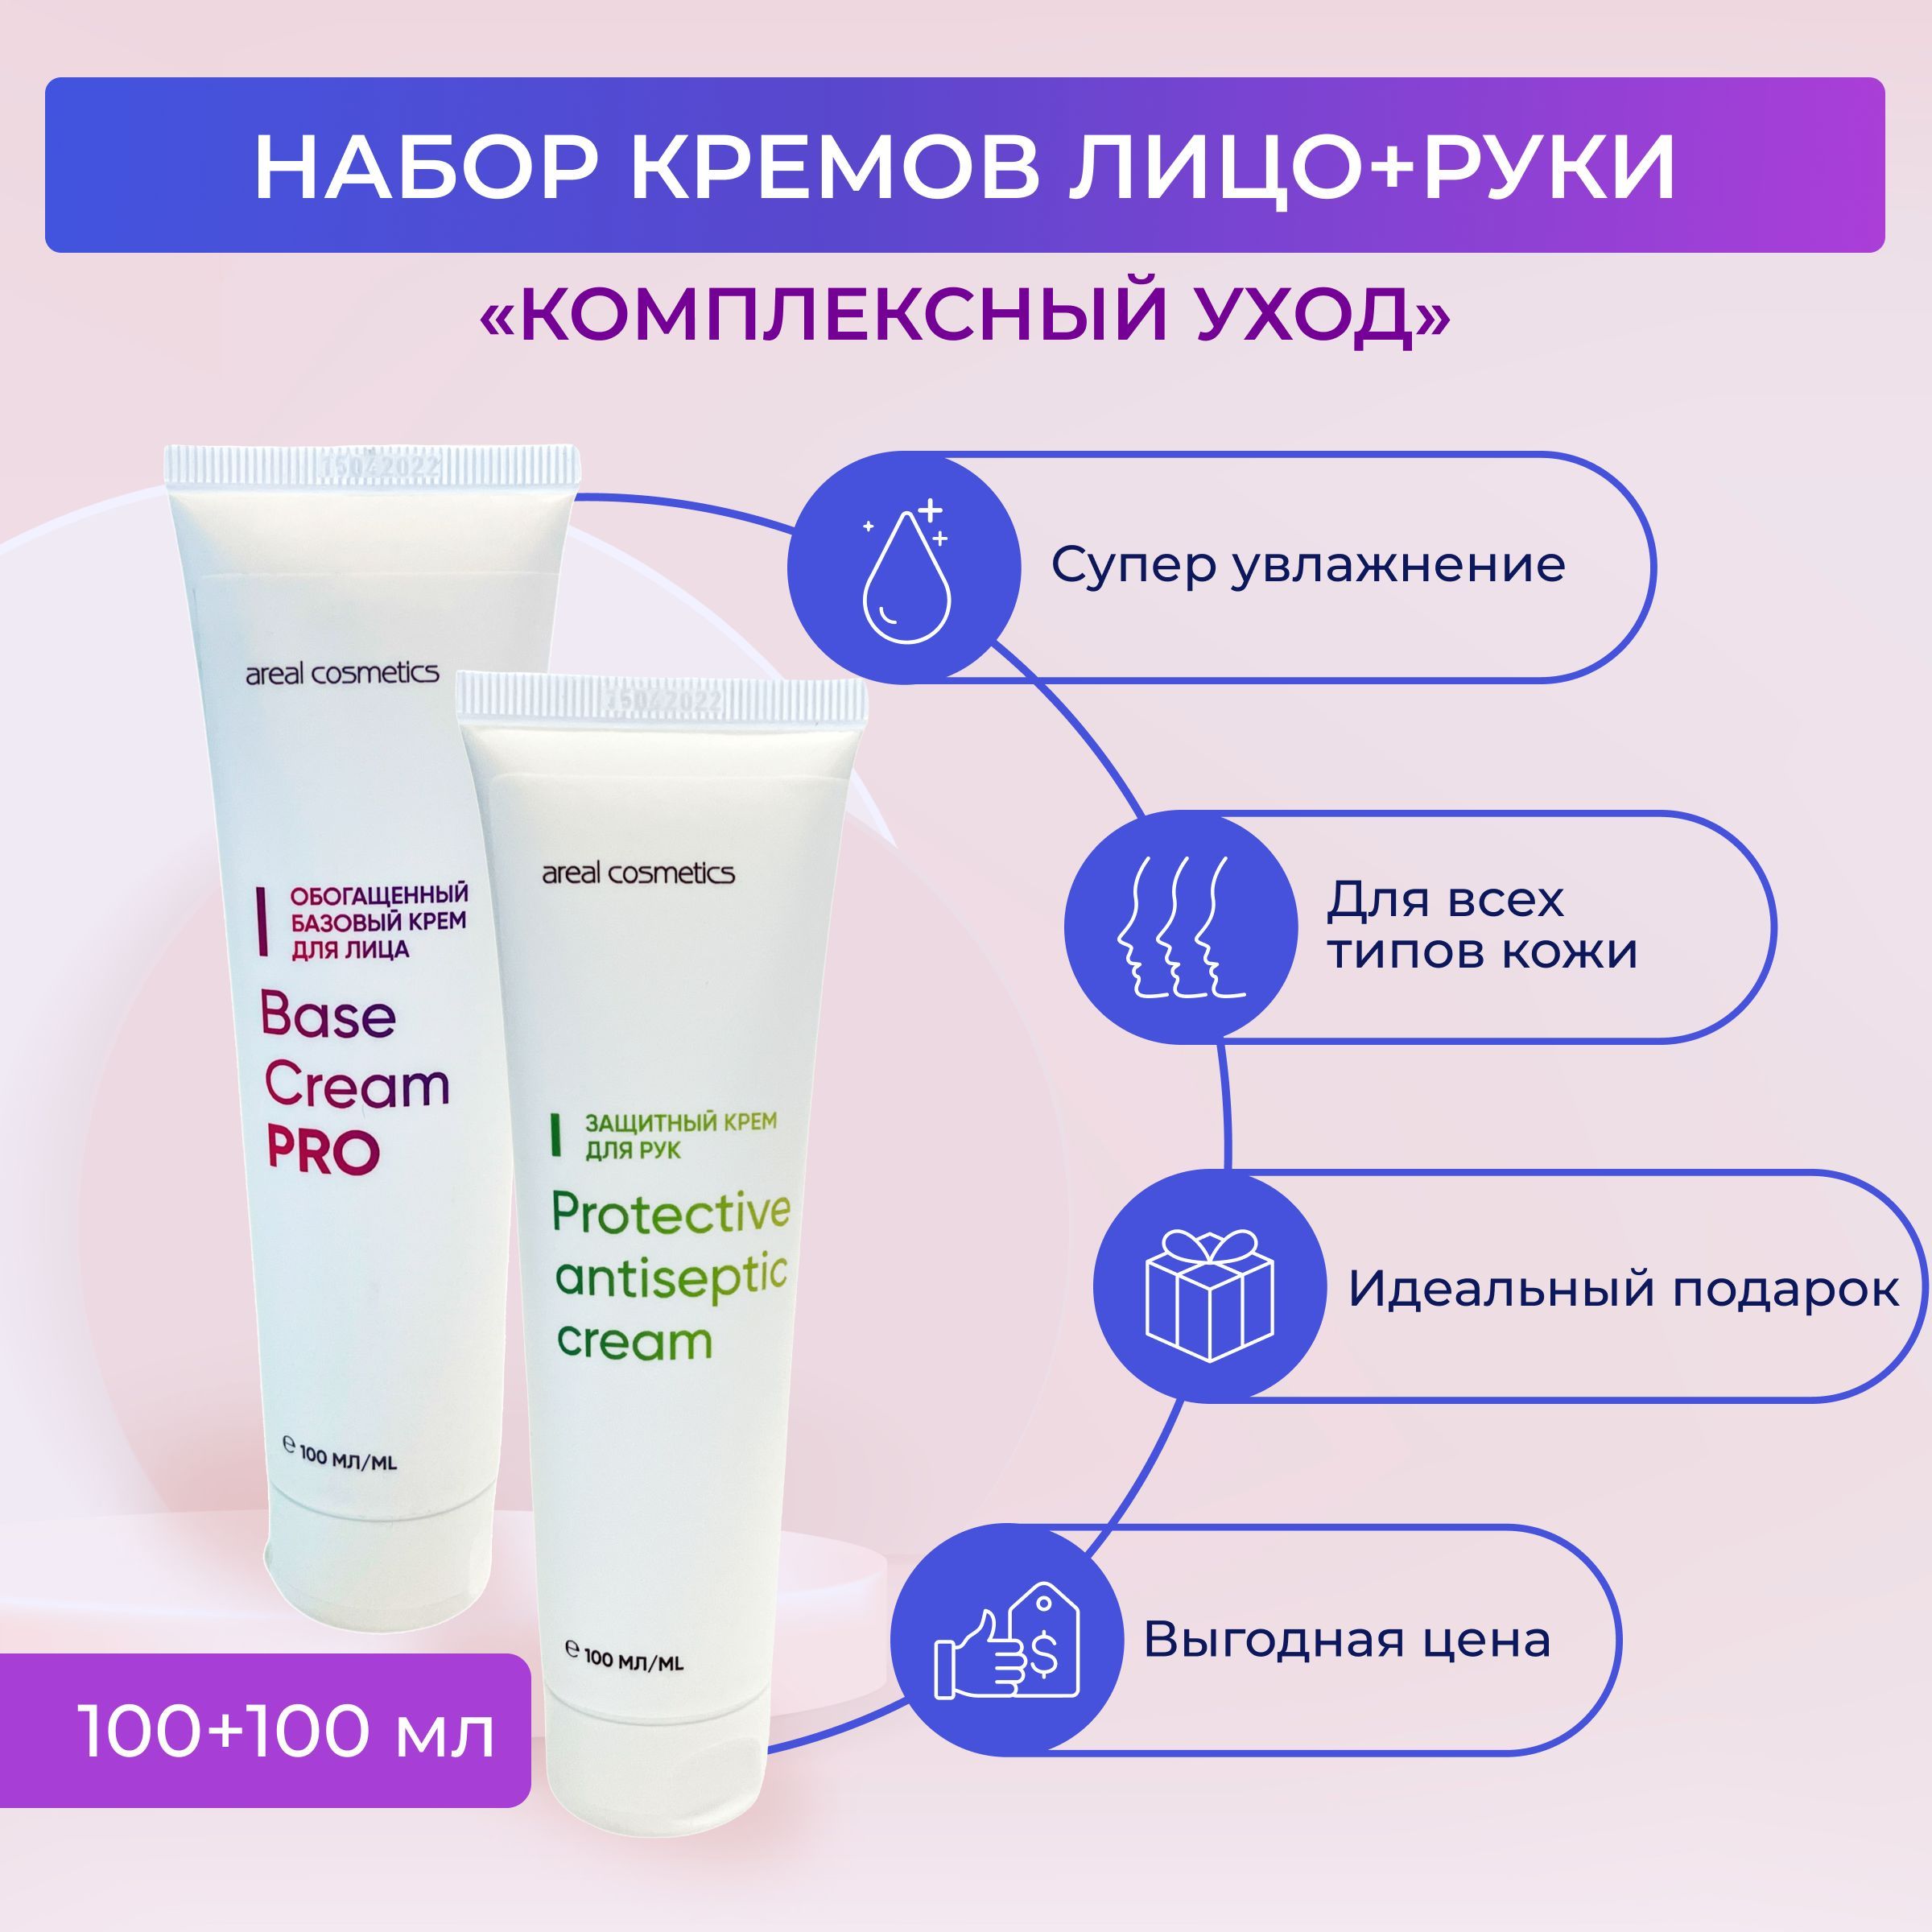 Защита кожи: современные защитные кремы и народные средства (домашние рецепты) для защиты кожи